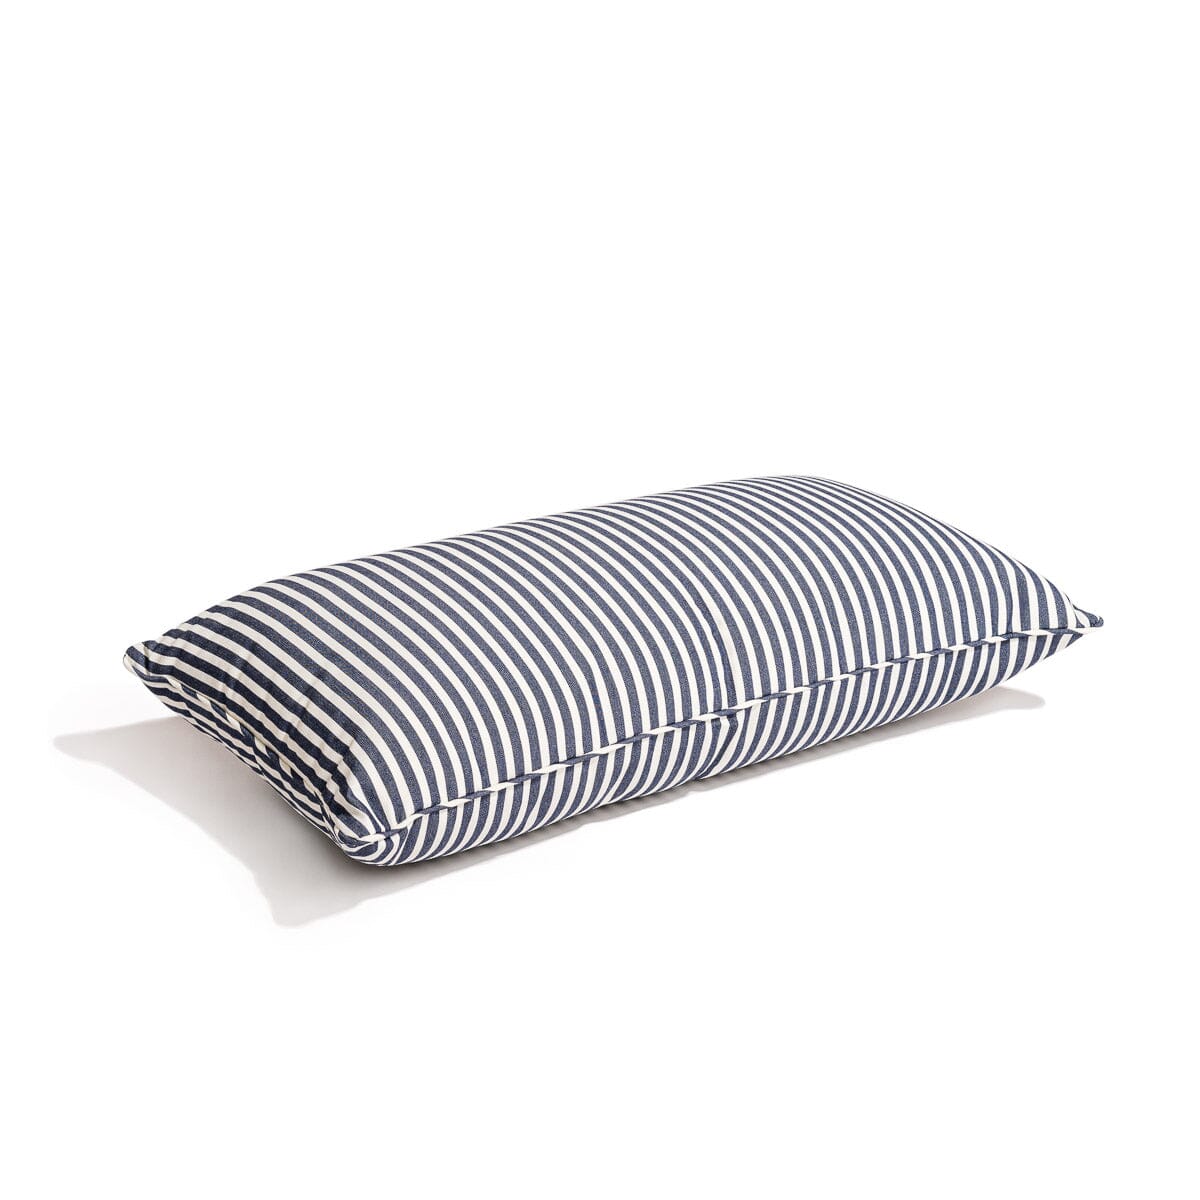 The Rectangle Throw Pillow - Lauren's Navy Stripe Rectangle Throw Pillow Business & Pleasure Co Aus 